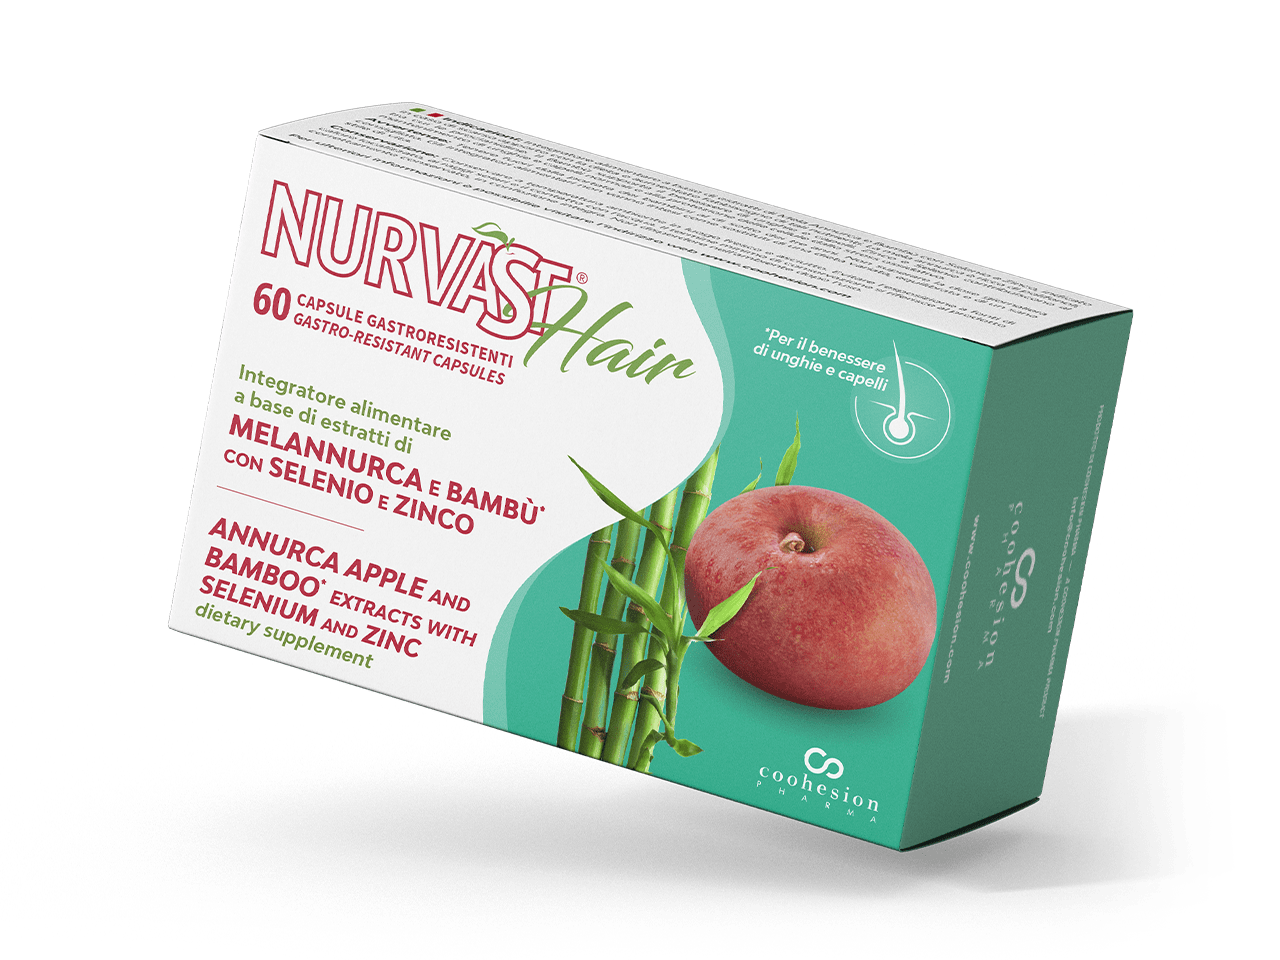 Nurvast Hair - Integratore a base di mela Annurca e bambù con selenio e zinco per il benessere di unghie e capelli